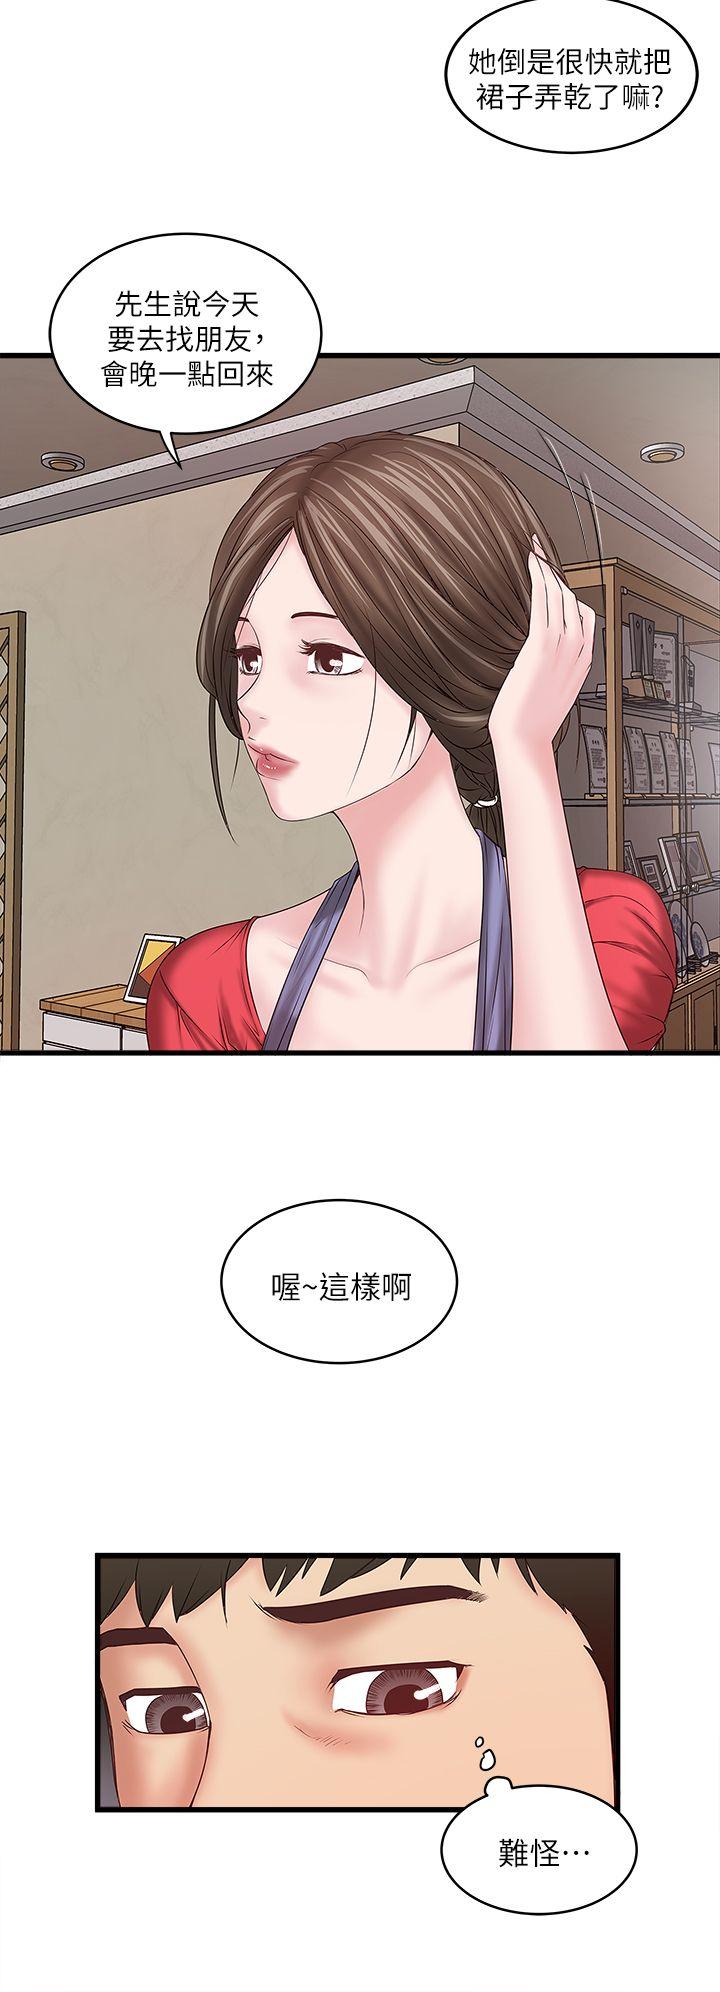 韩国污漫画 下女,初希 第4话-意外的画面 31